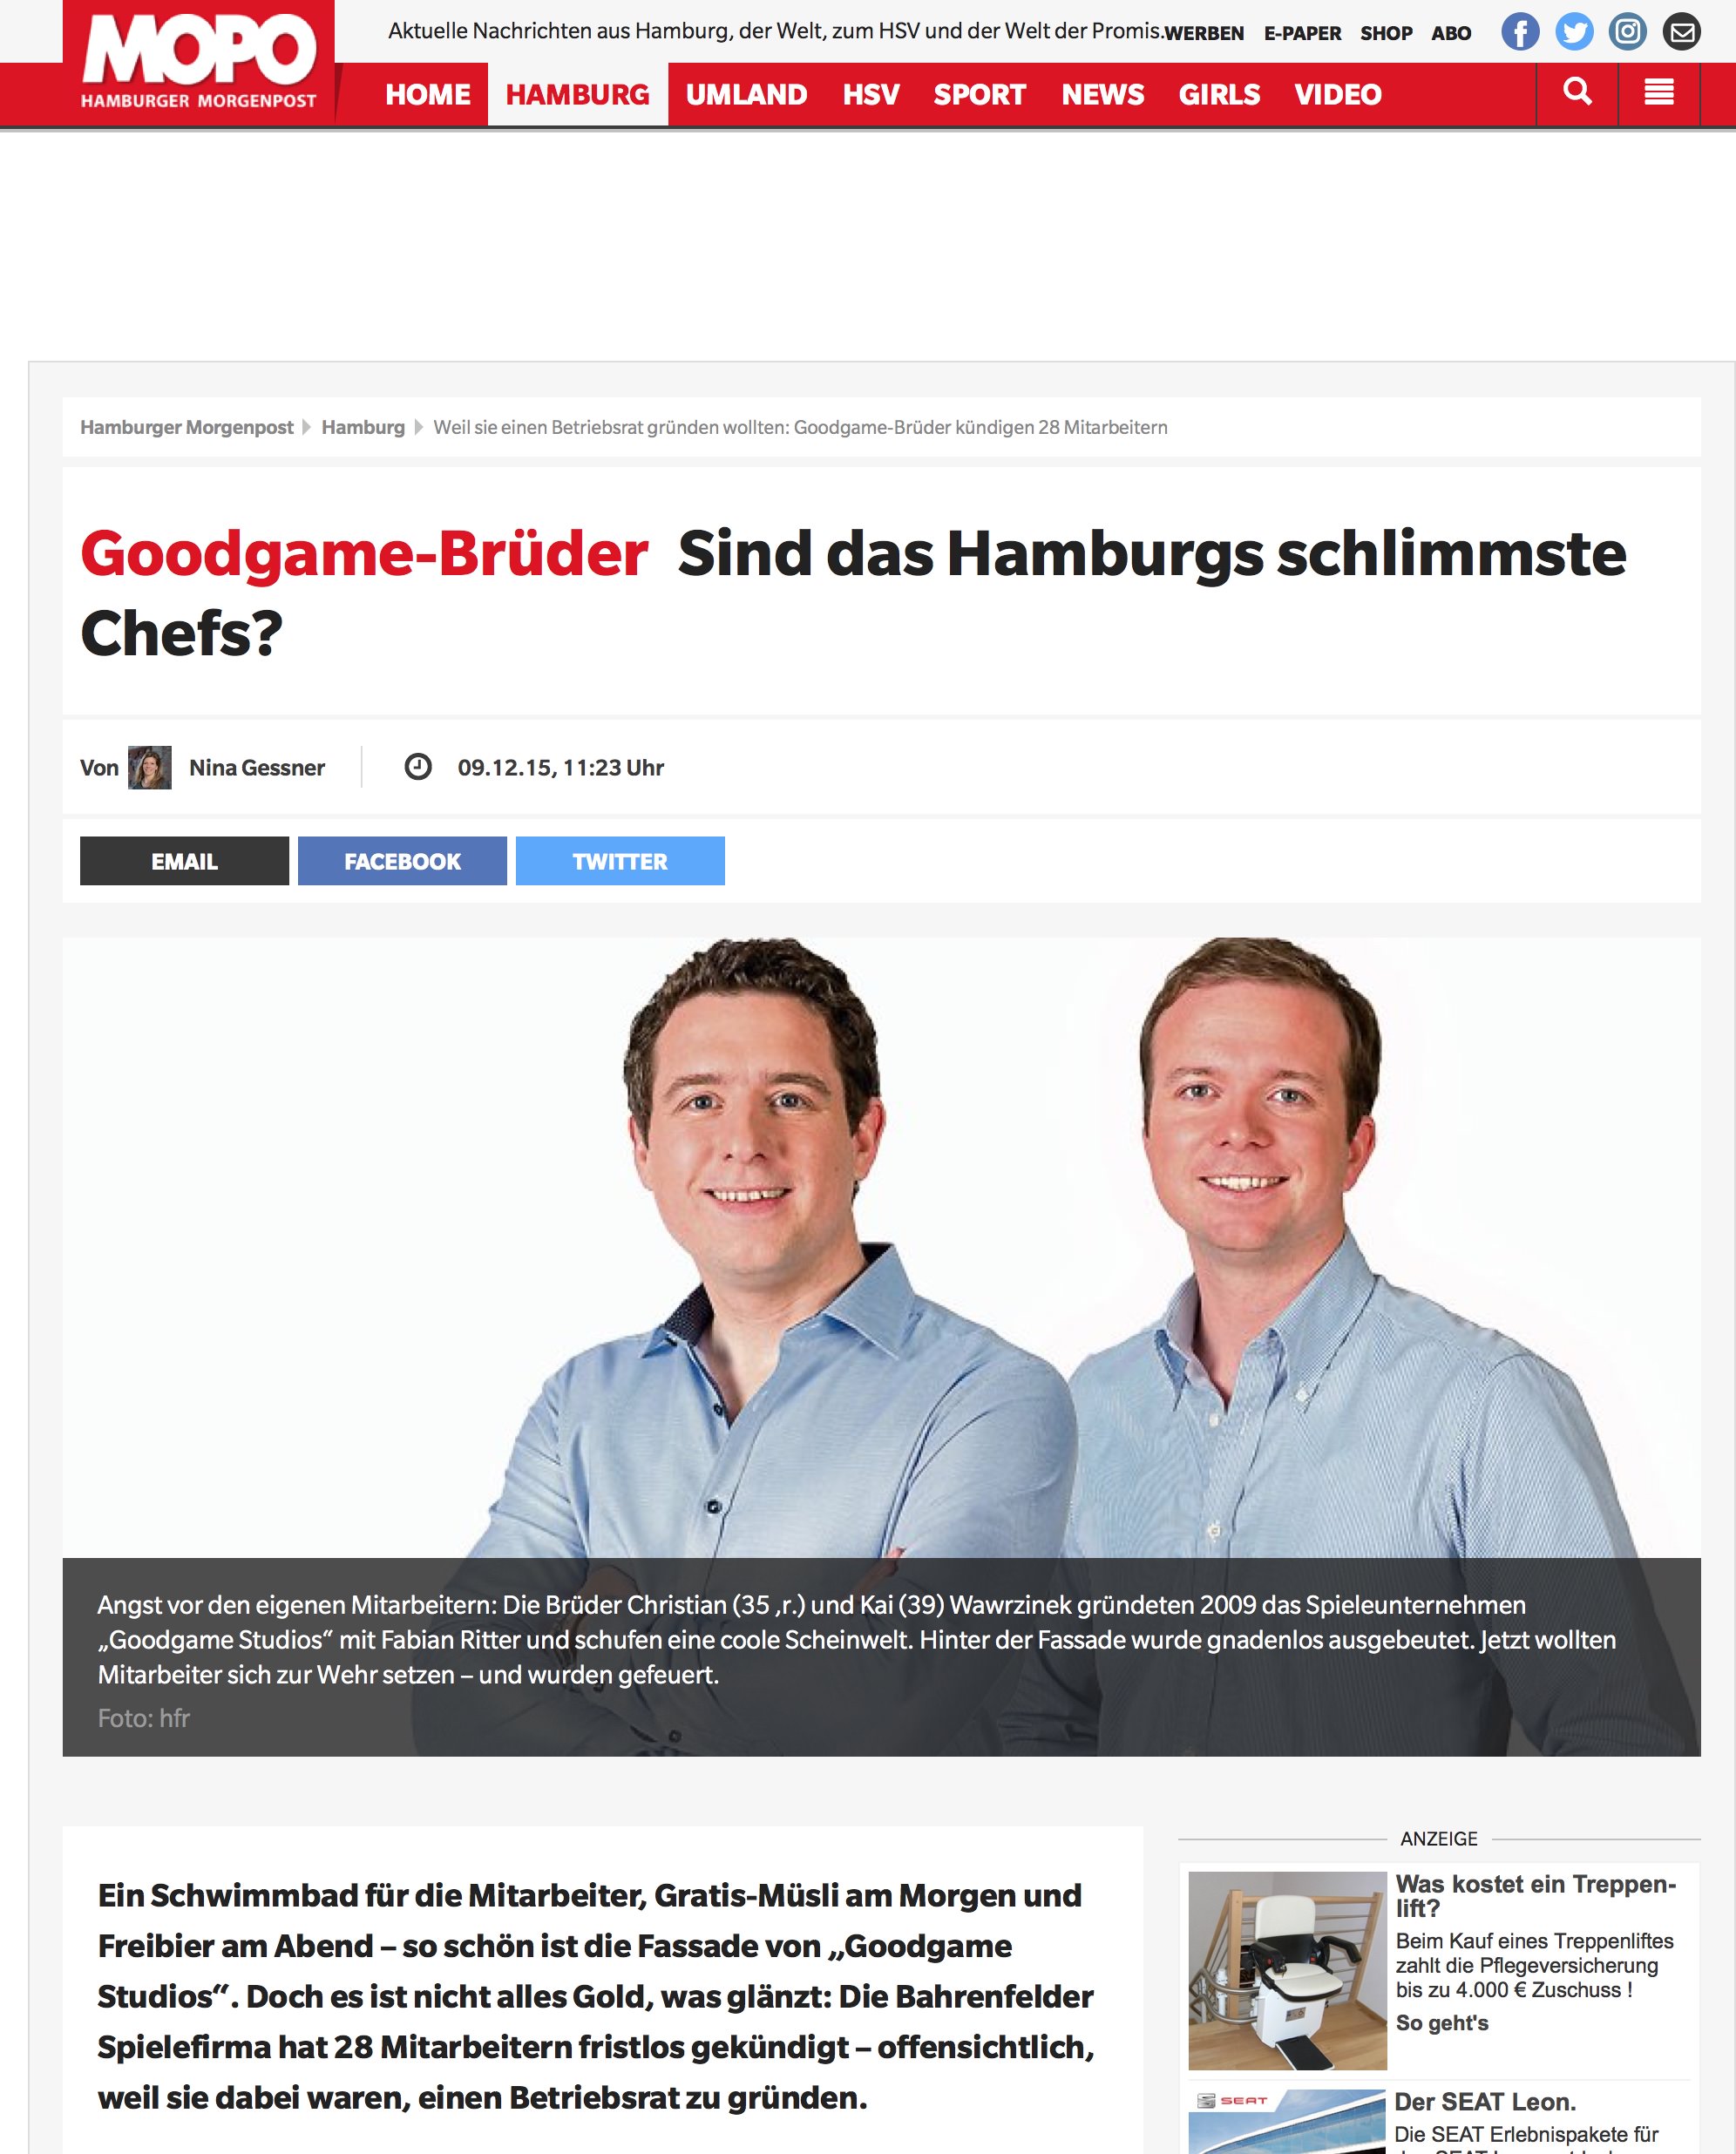 Andreas Wilsdorf erklärt, wie das Management von Goodgame Studios auf die Betriebsrat-Pläne reagierte.